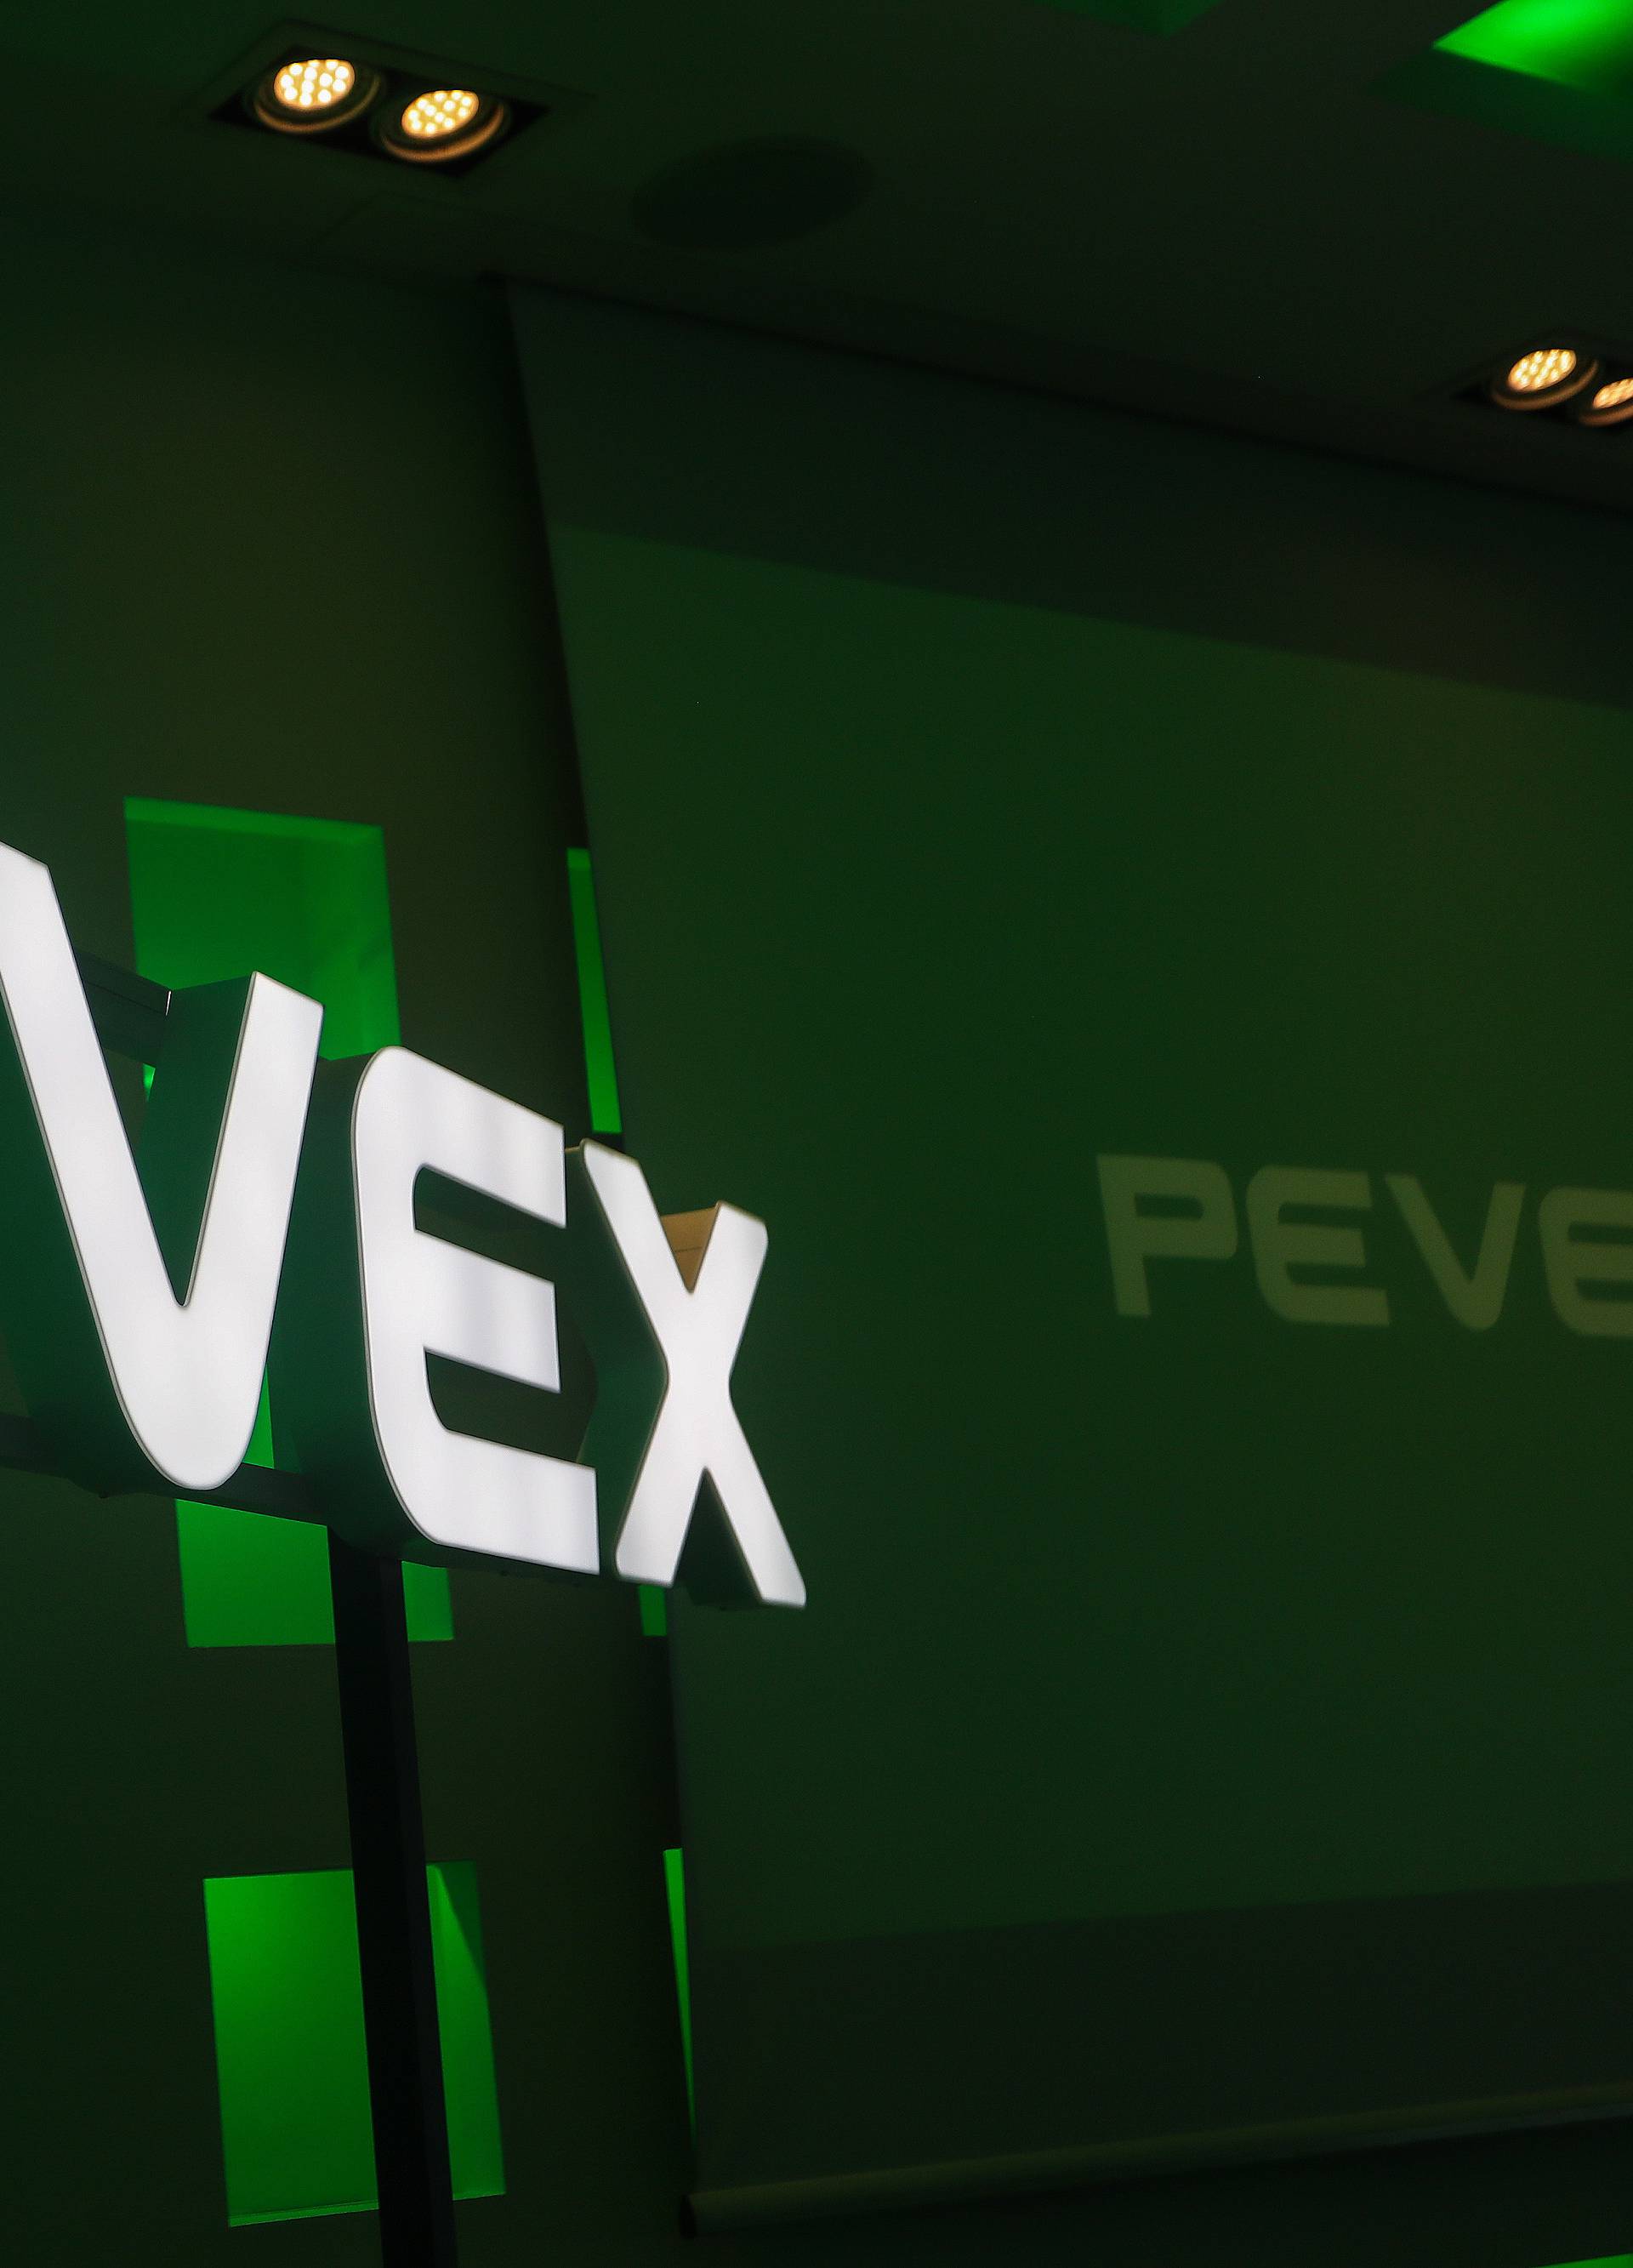 Zbogom Pevec: Trgovački lanac promijenio je naziv u  - Pevex!